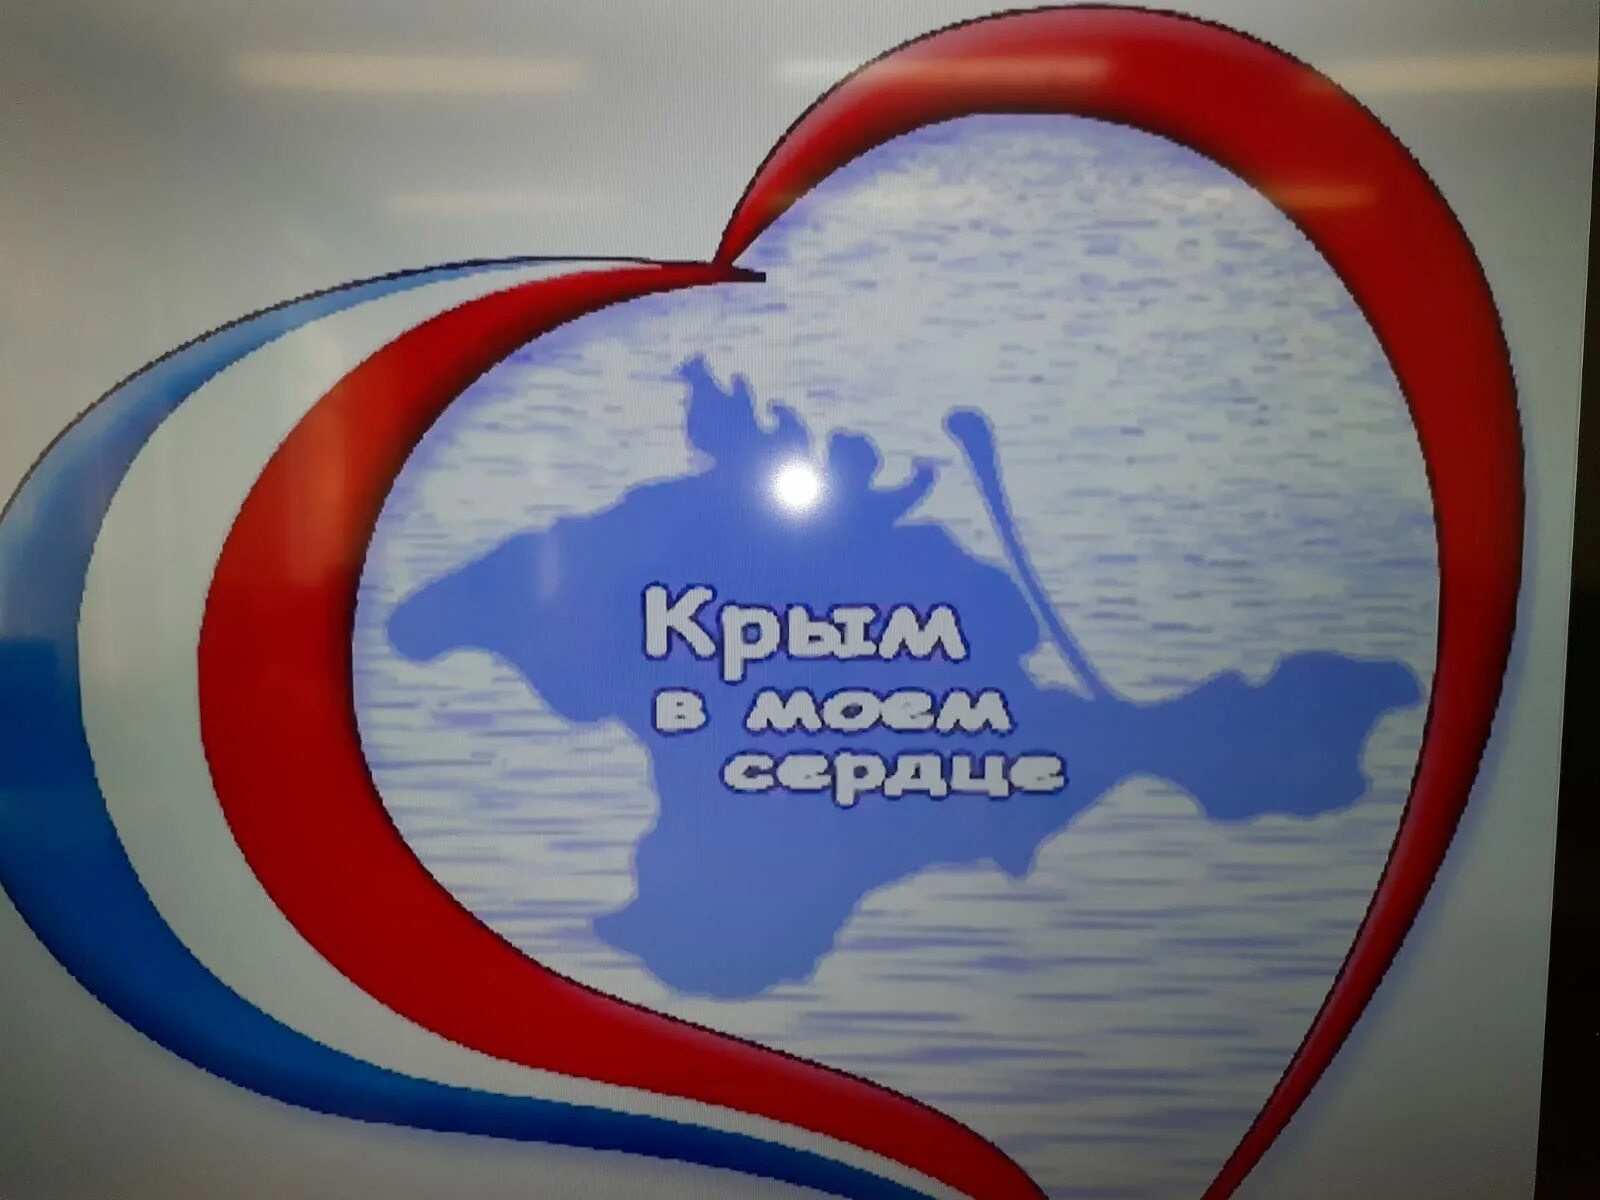 Открытка воссоединение крыма с россией 18